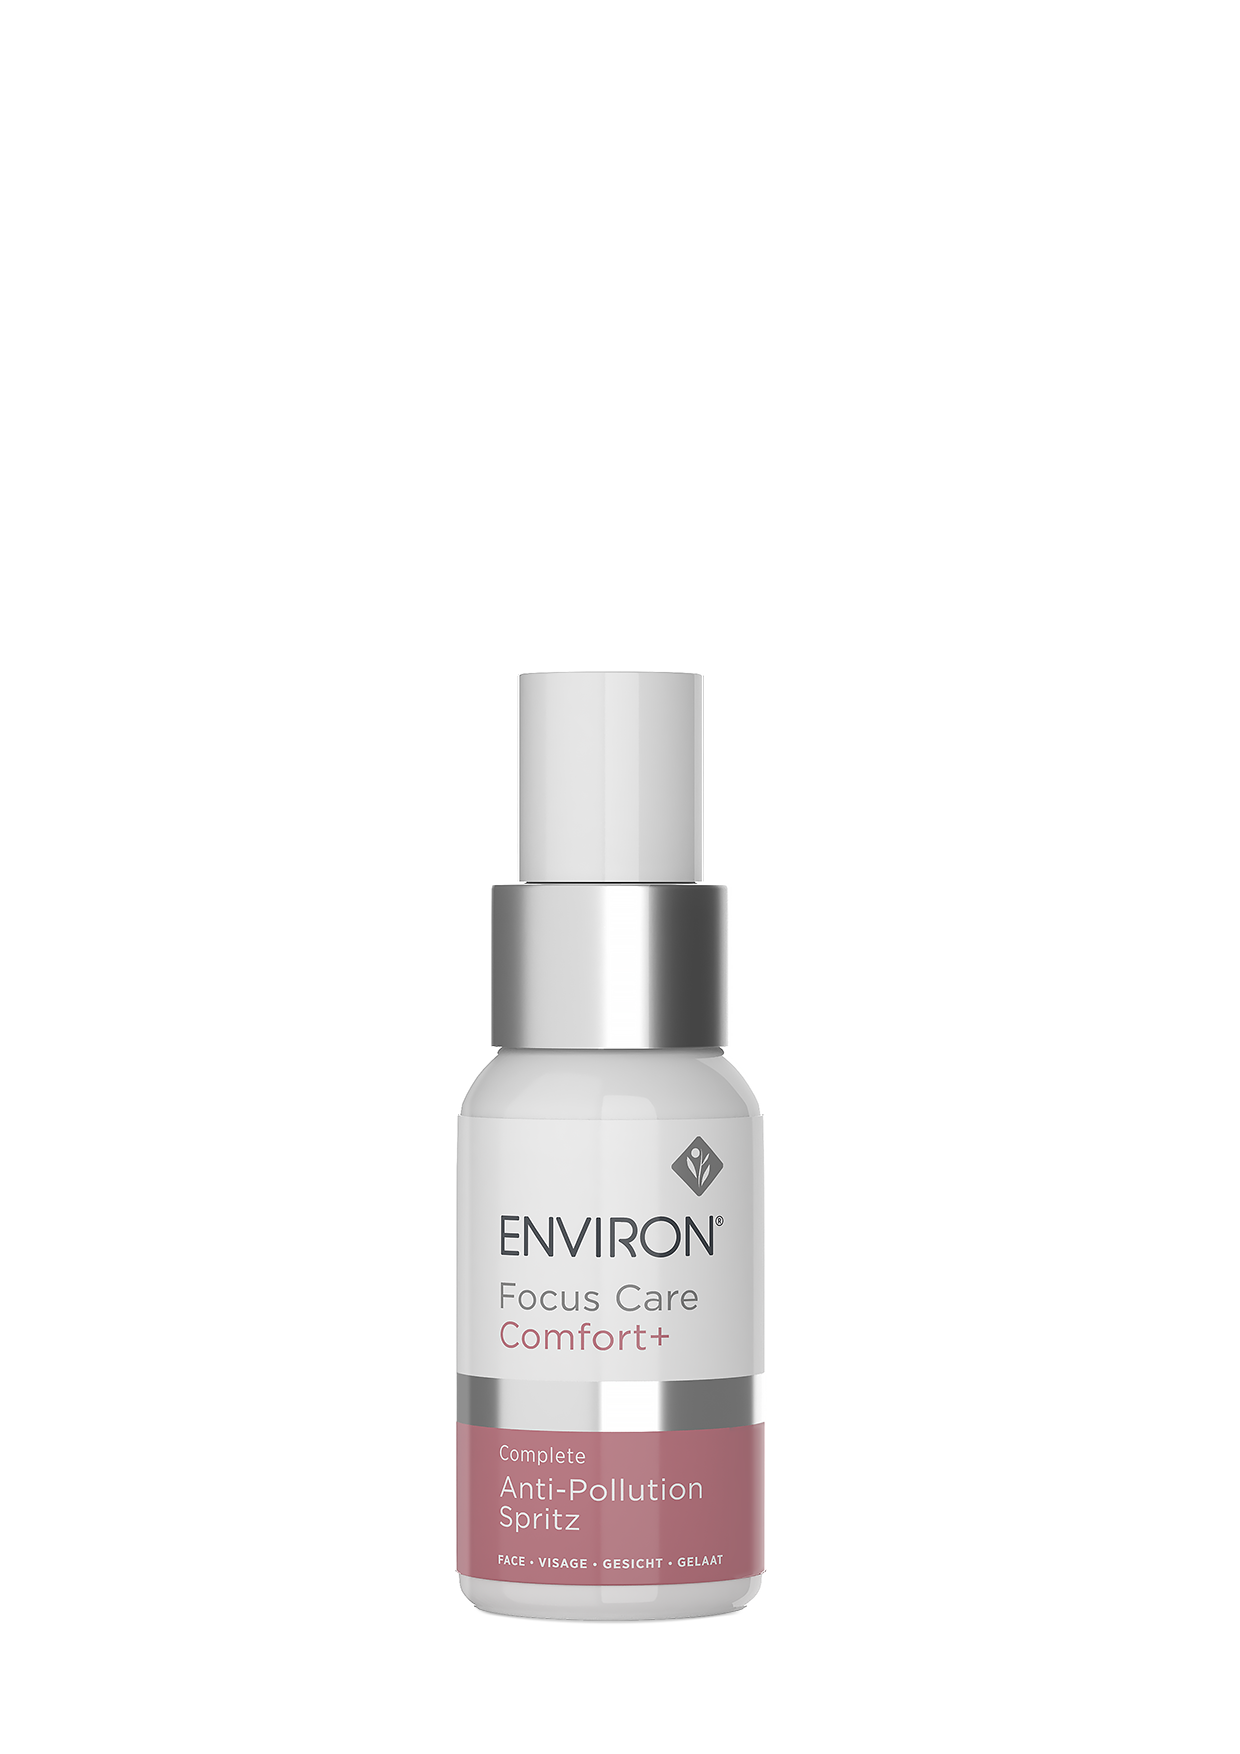 Environ Focus Care Comfort + Complete Anti-Pollution Spritz